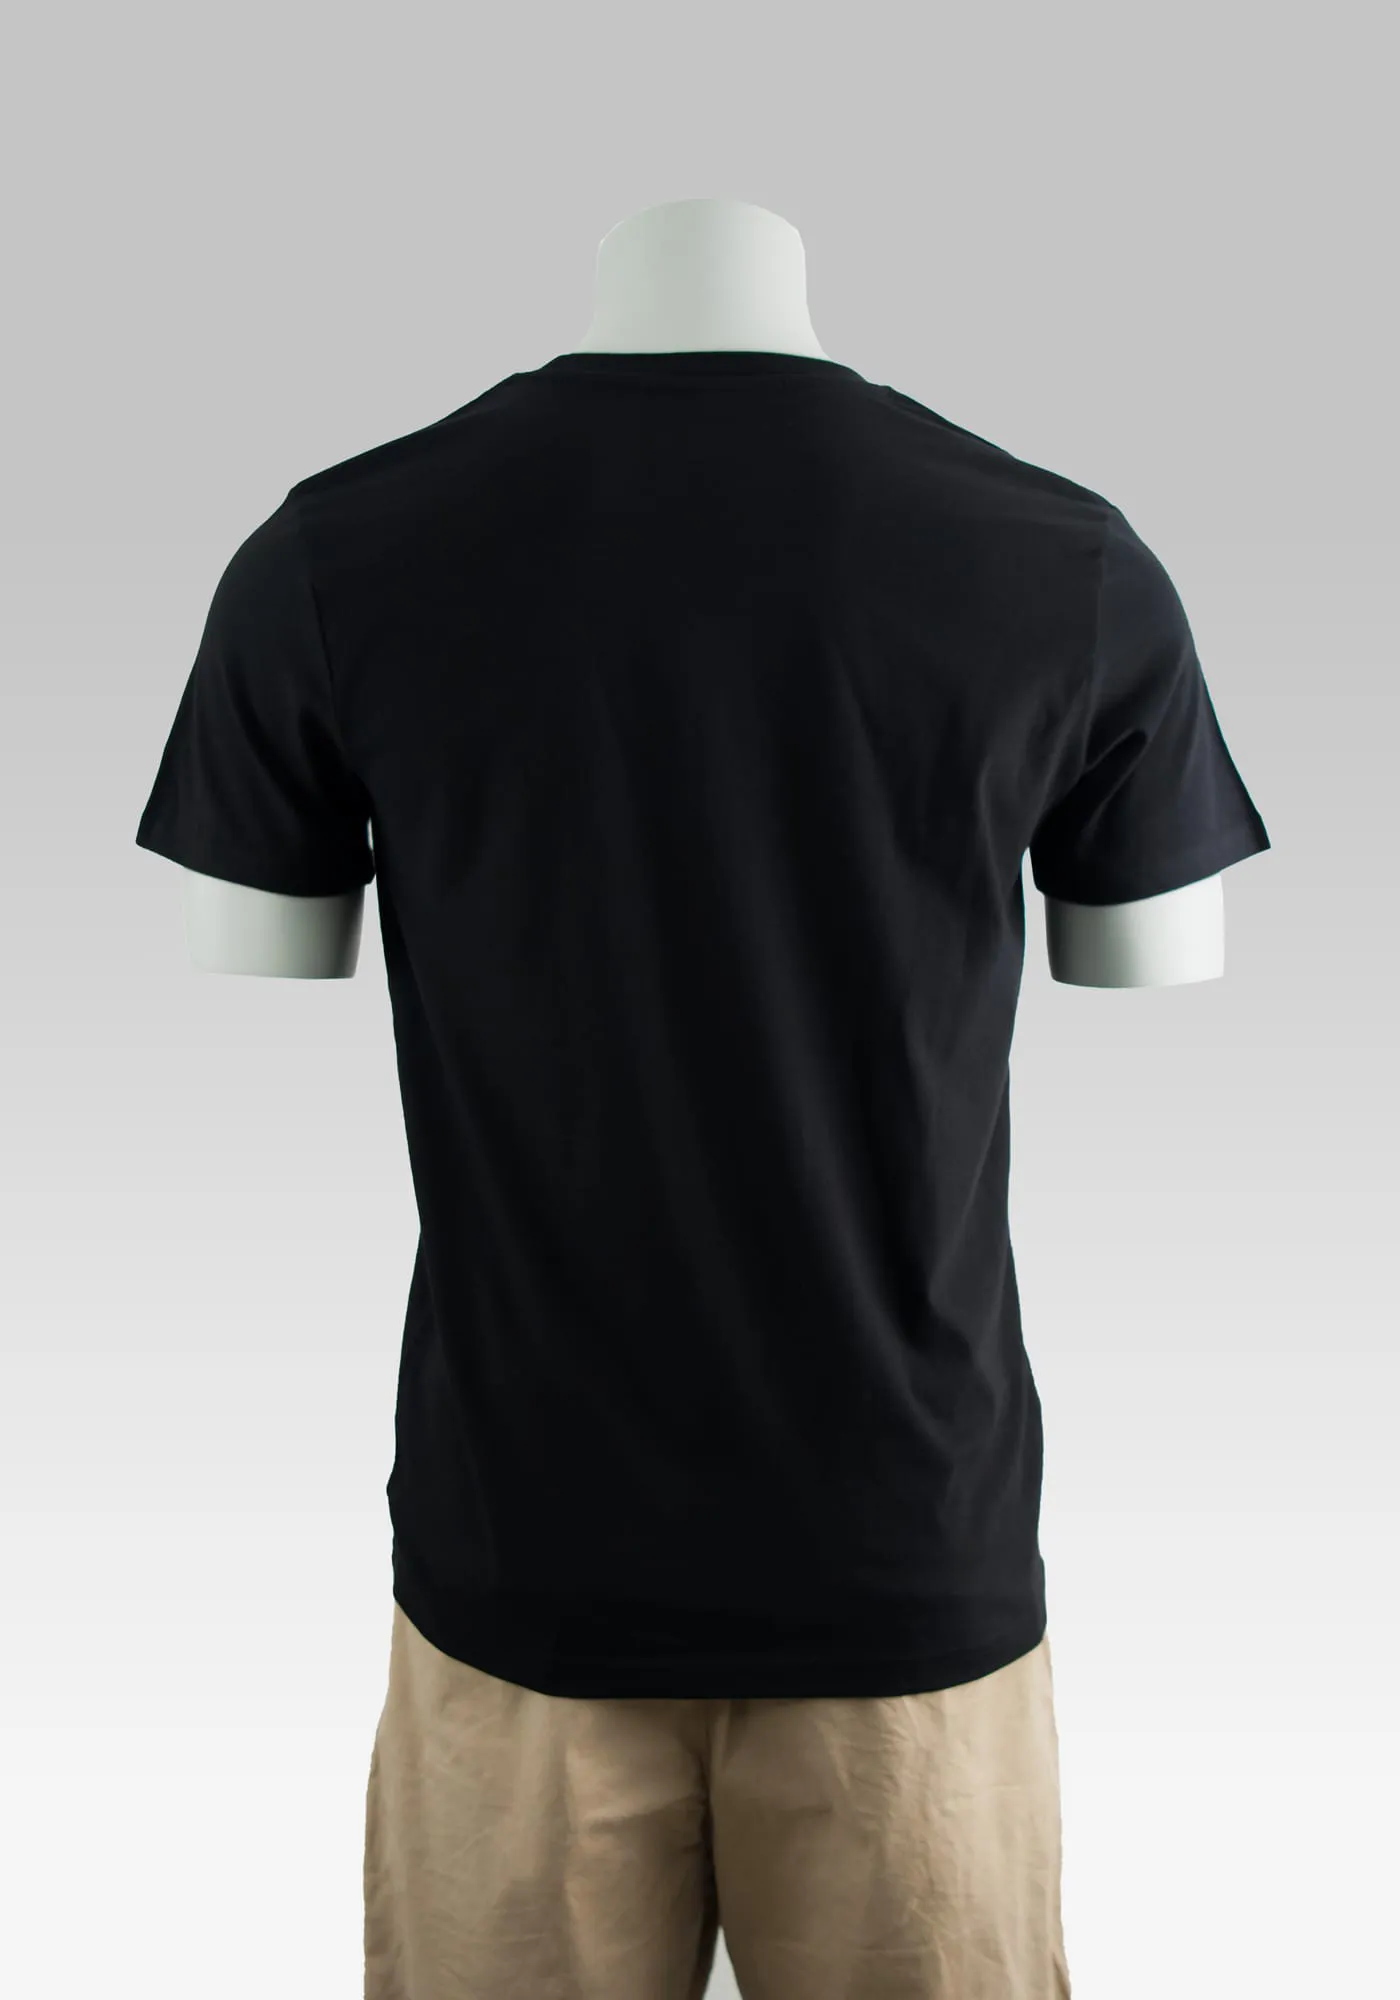 Comic Hollowpuppe mit schwarzem Hitman T-Shirt in Rückenansicht